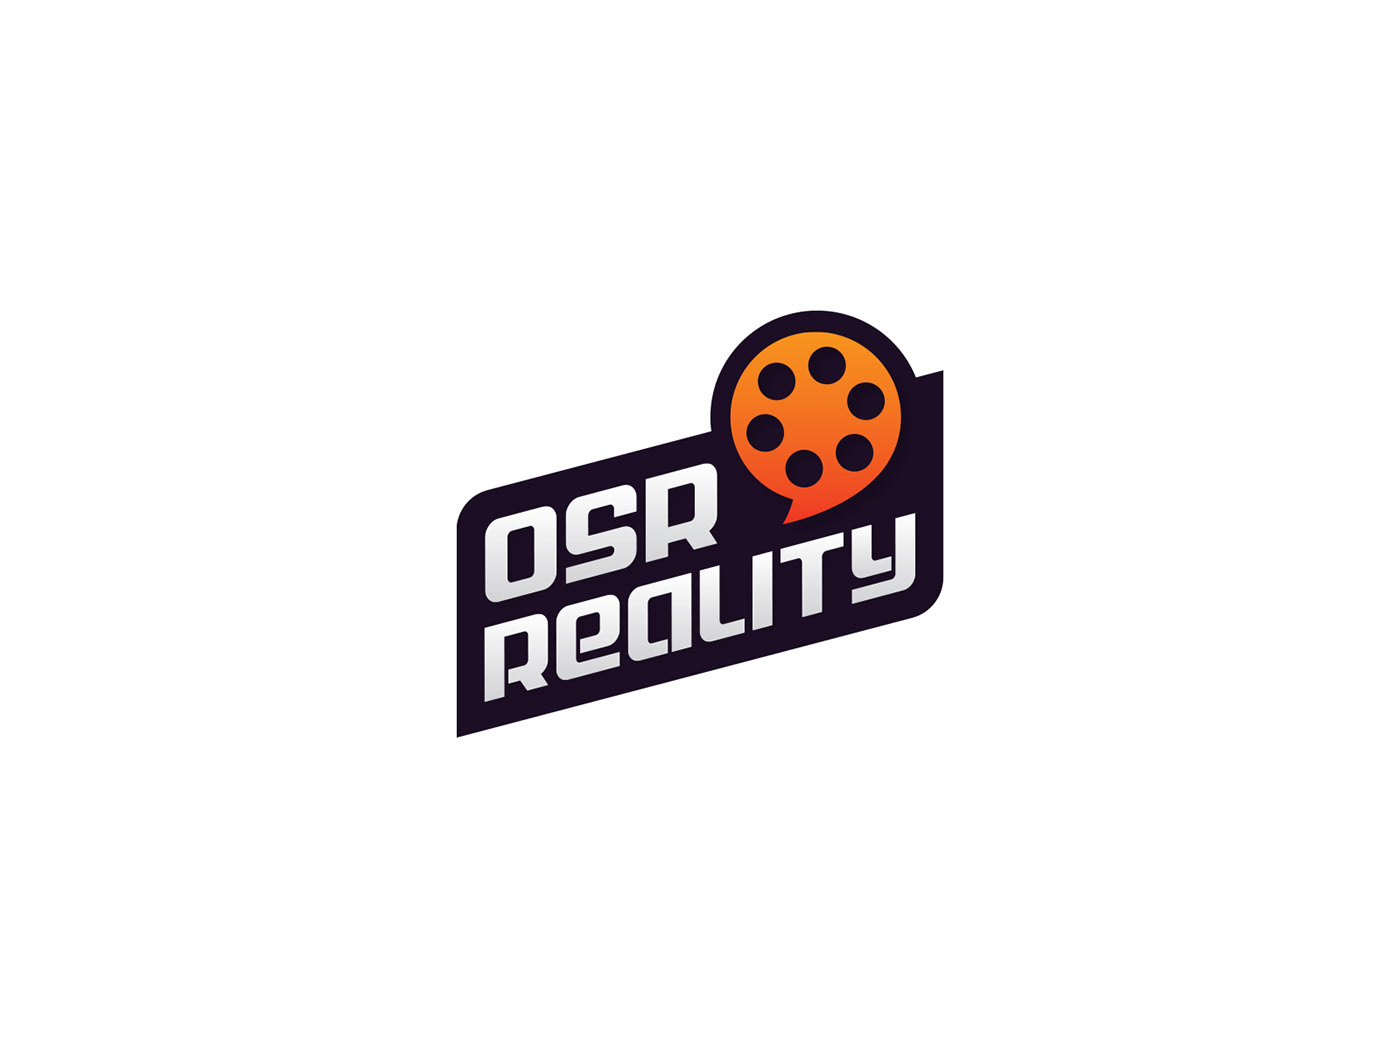 Comedy Champion OSR Digital OSR Reality Subarna Bhandari Subarna Design subarnabhd